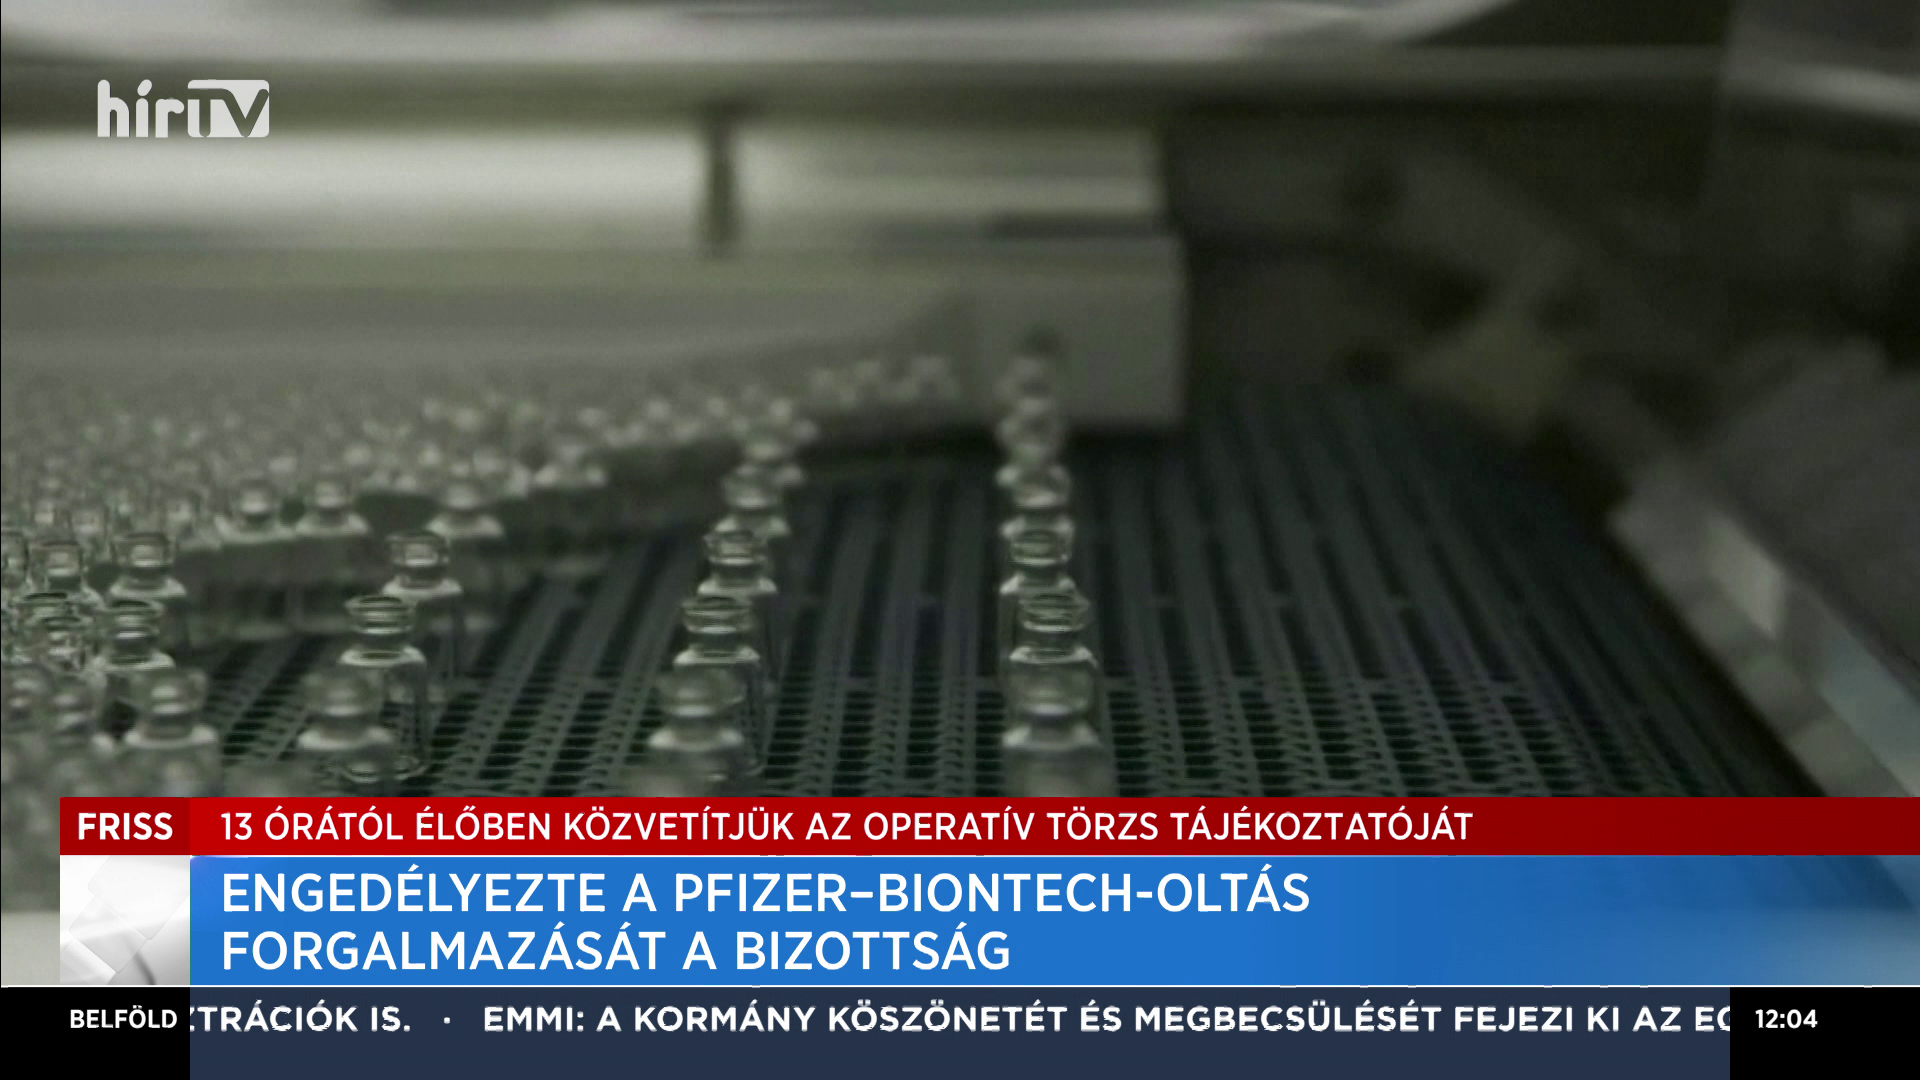 Engedélyezte a Pfizer-Biontech-oltás forgalmazását a Bizottság